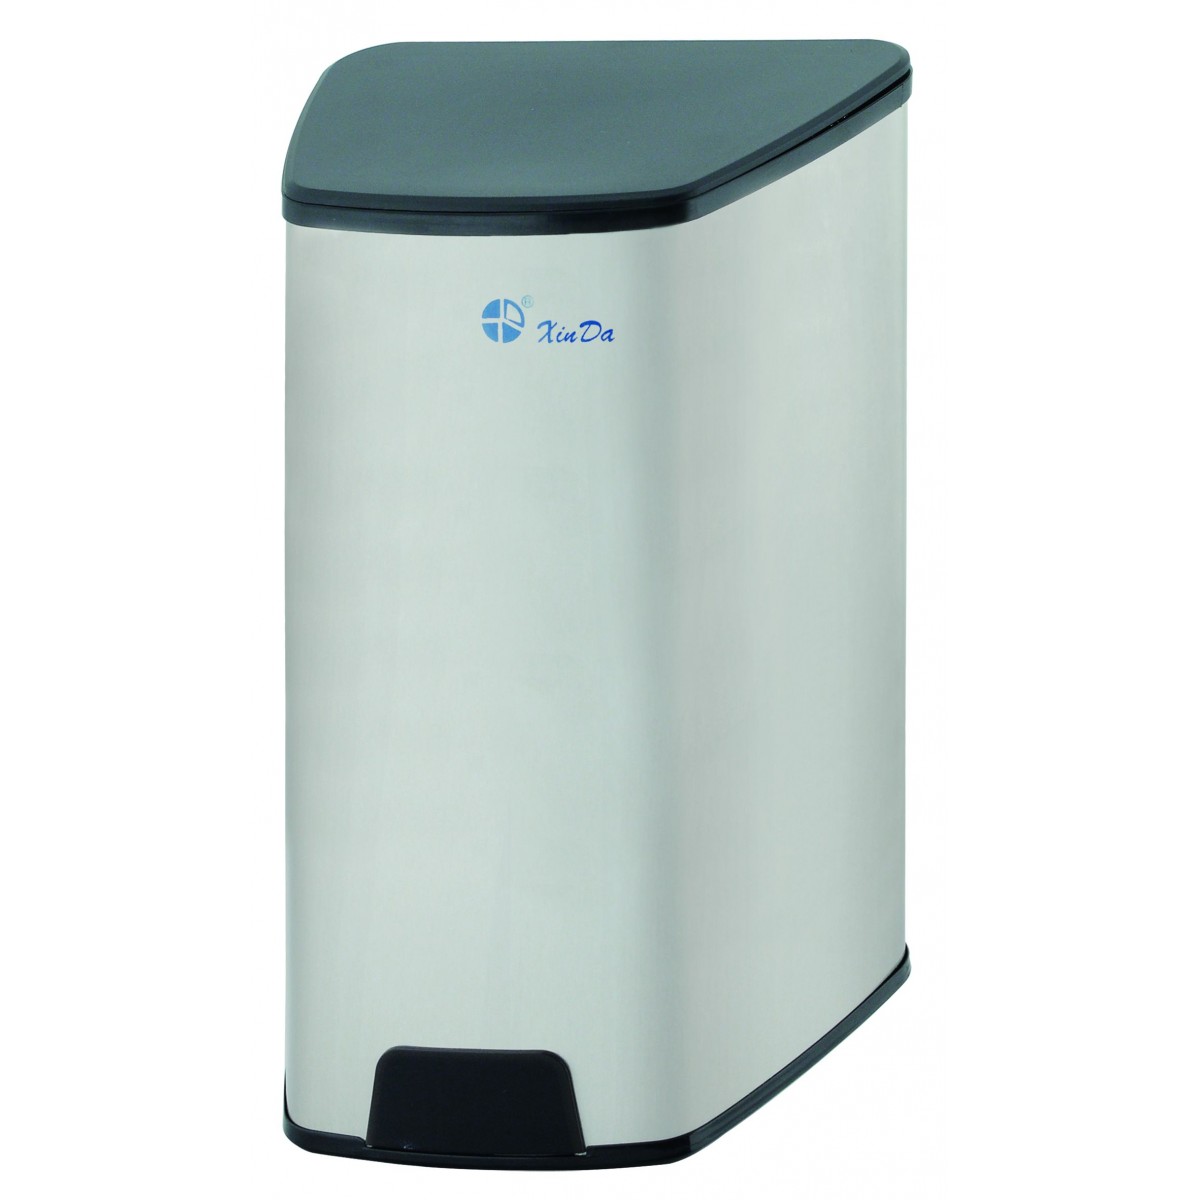 Photocell dispenser for disinfectant, liquid soap, etc. liquids